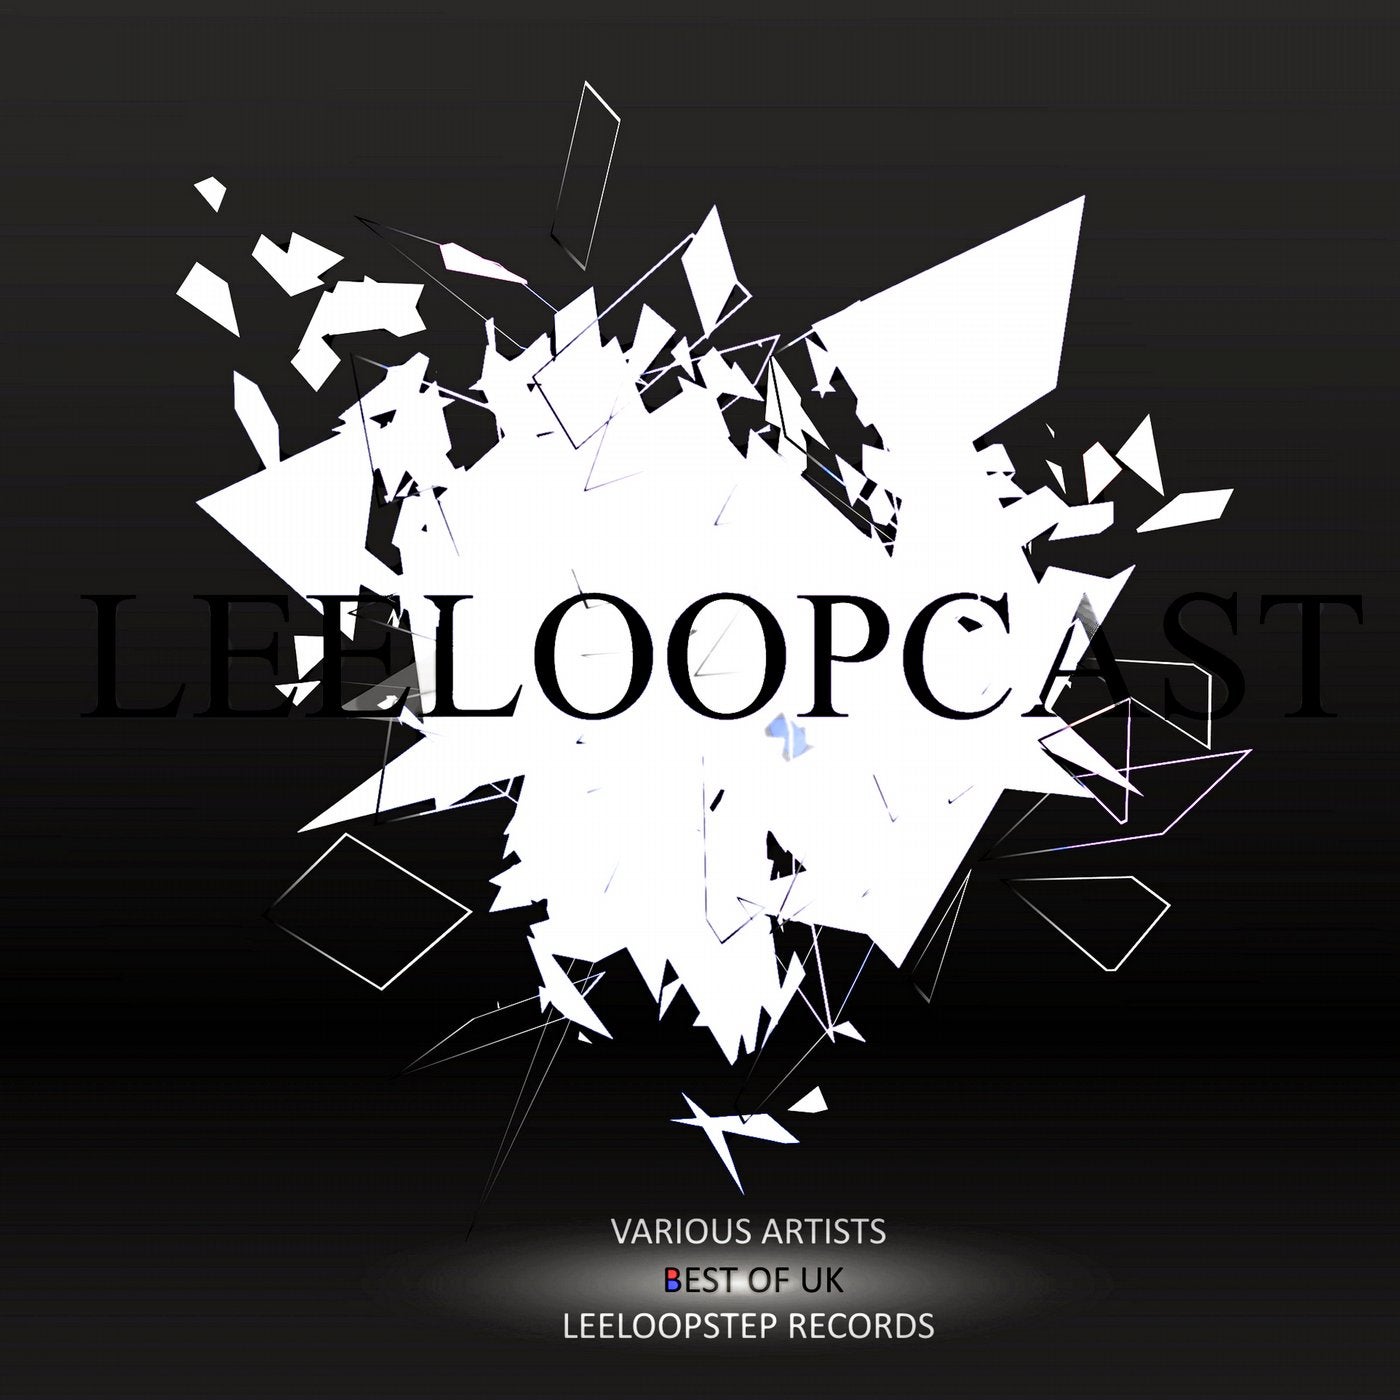 Leeloopcast: Best of UK